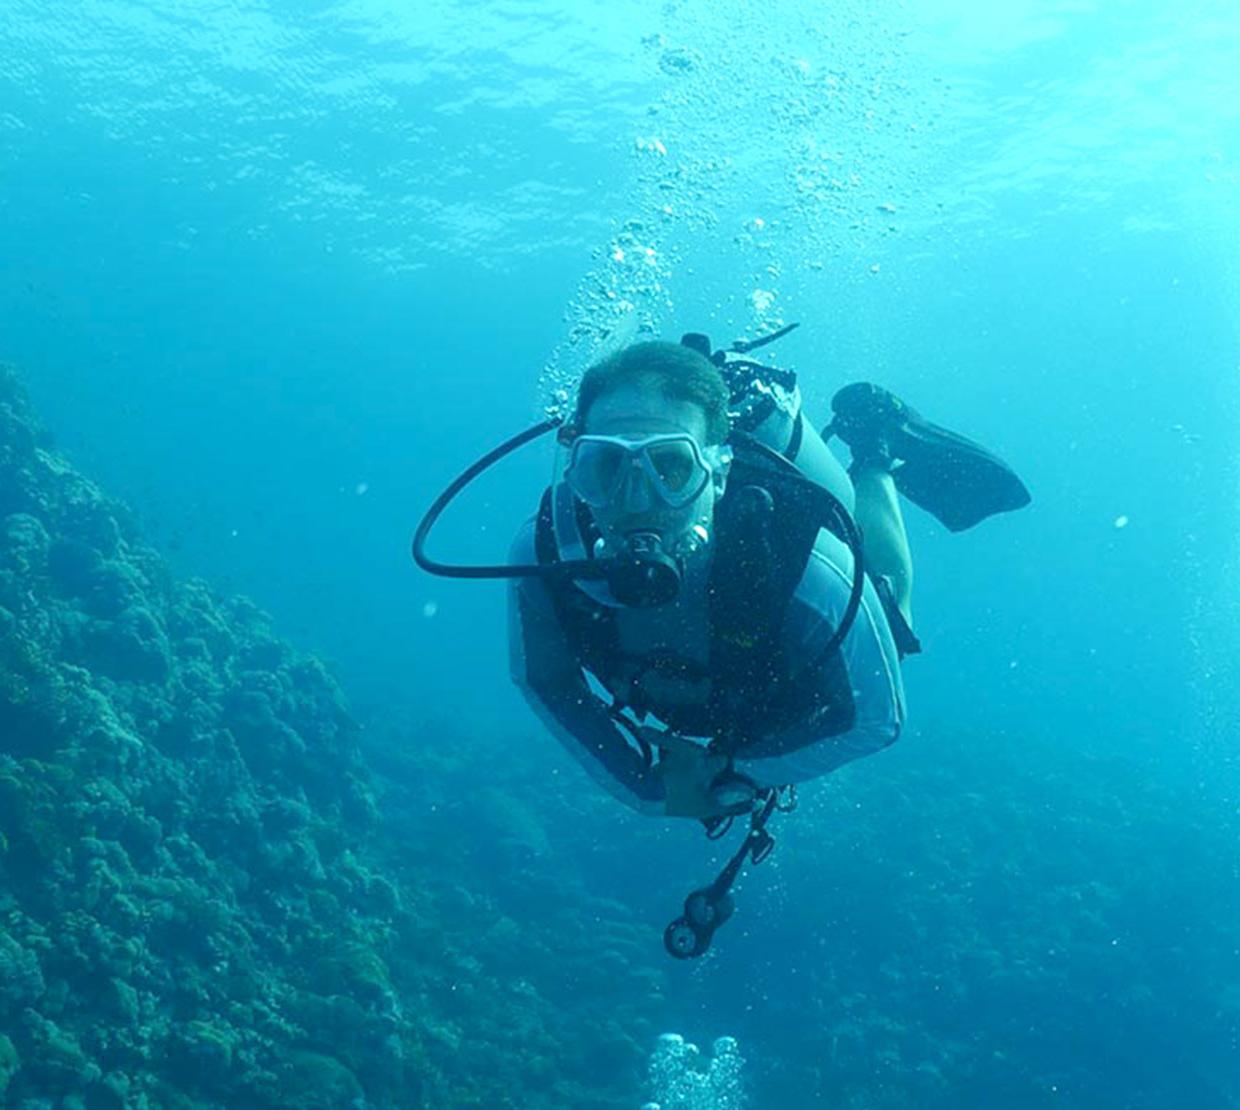 Scuba diver in reef